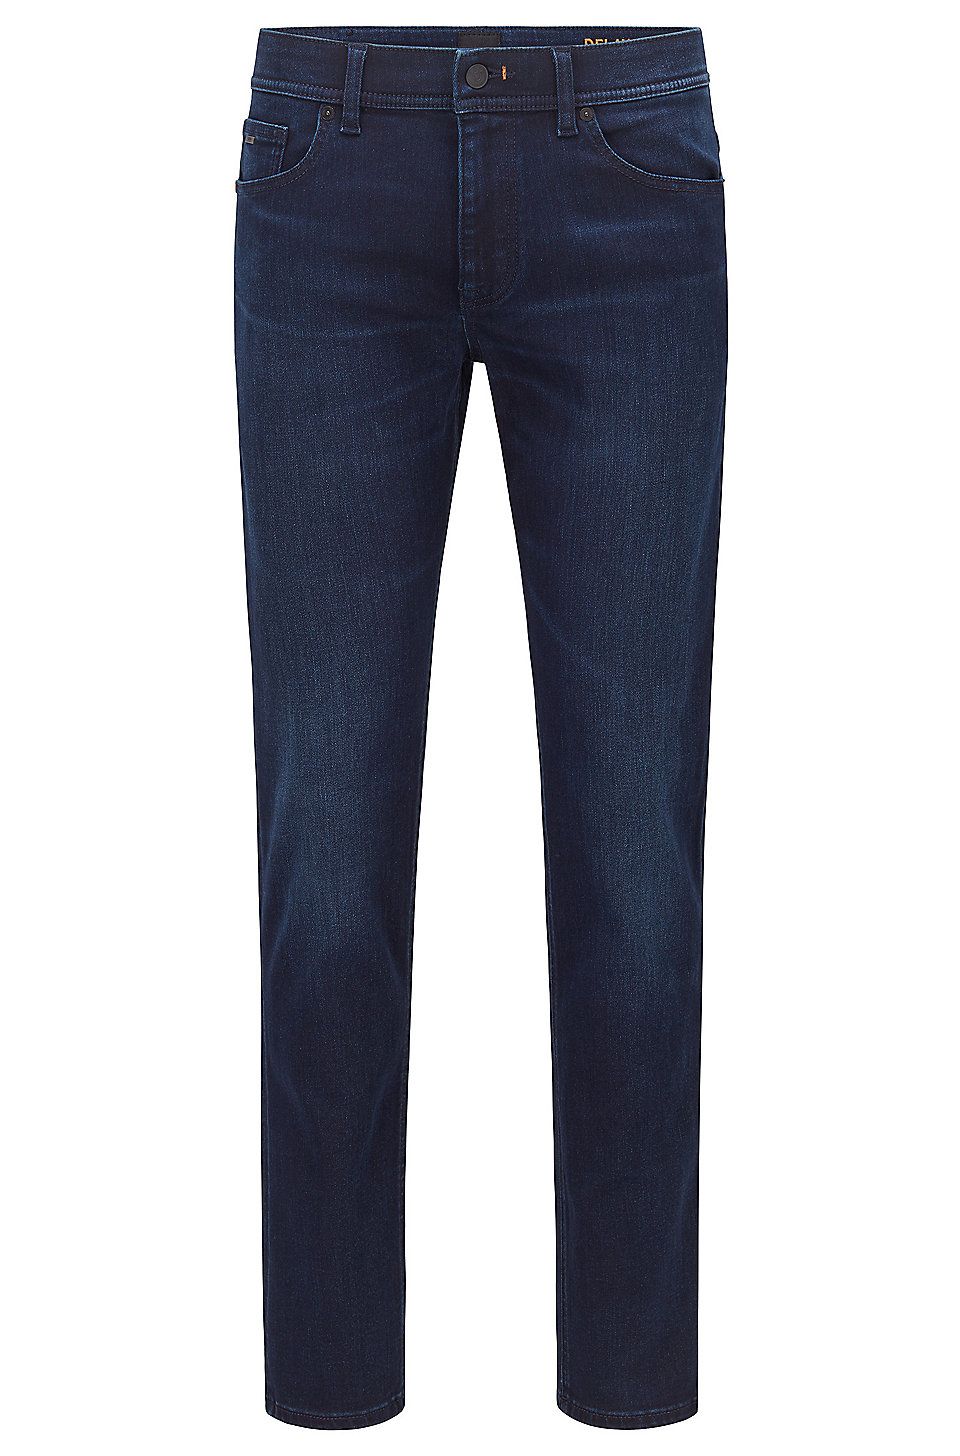 BOSS - Slim-fit jeans in dark-blue super-stretch denim | Hugo Boss (UK)